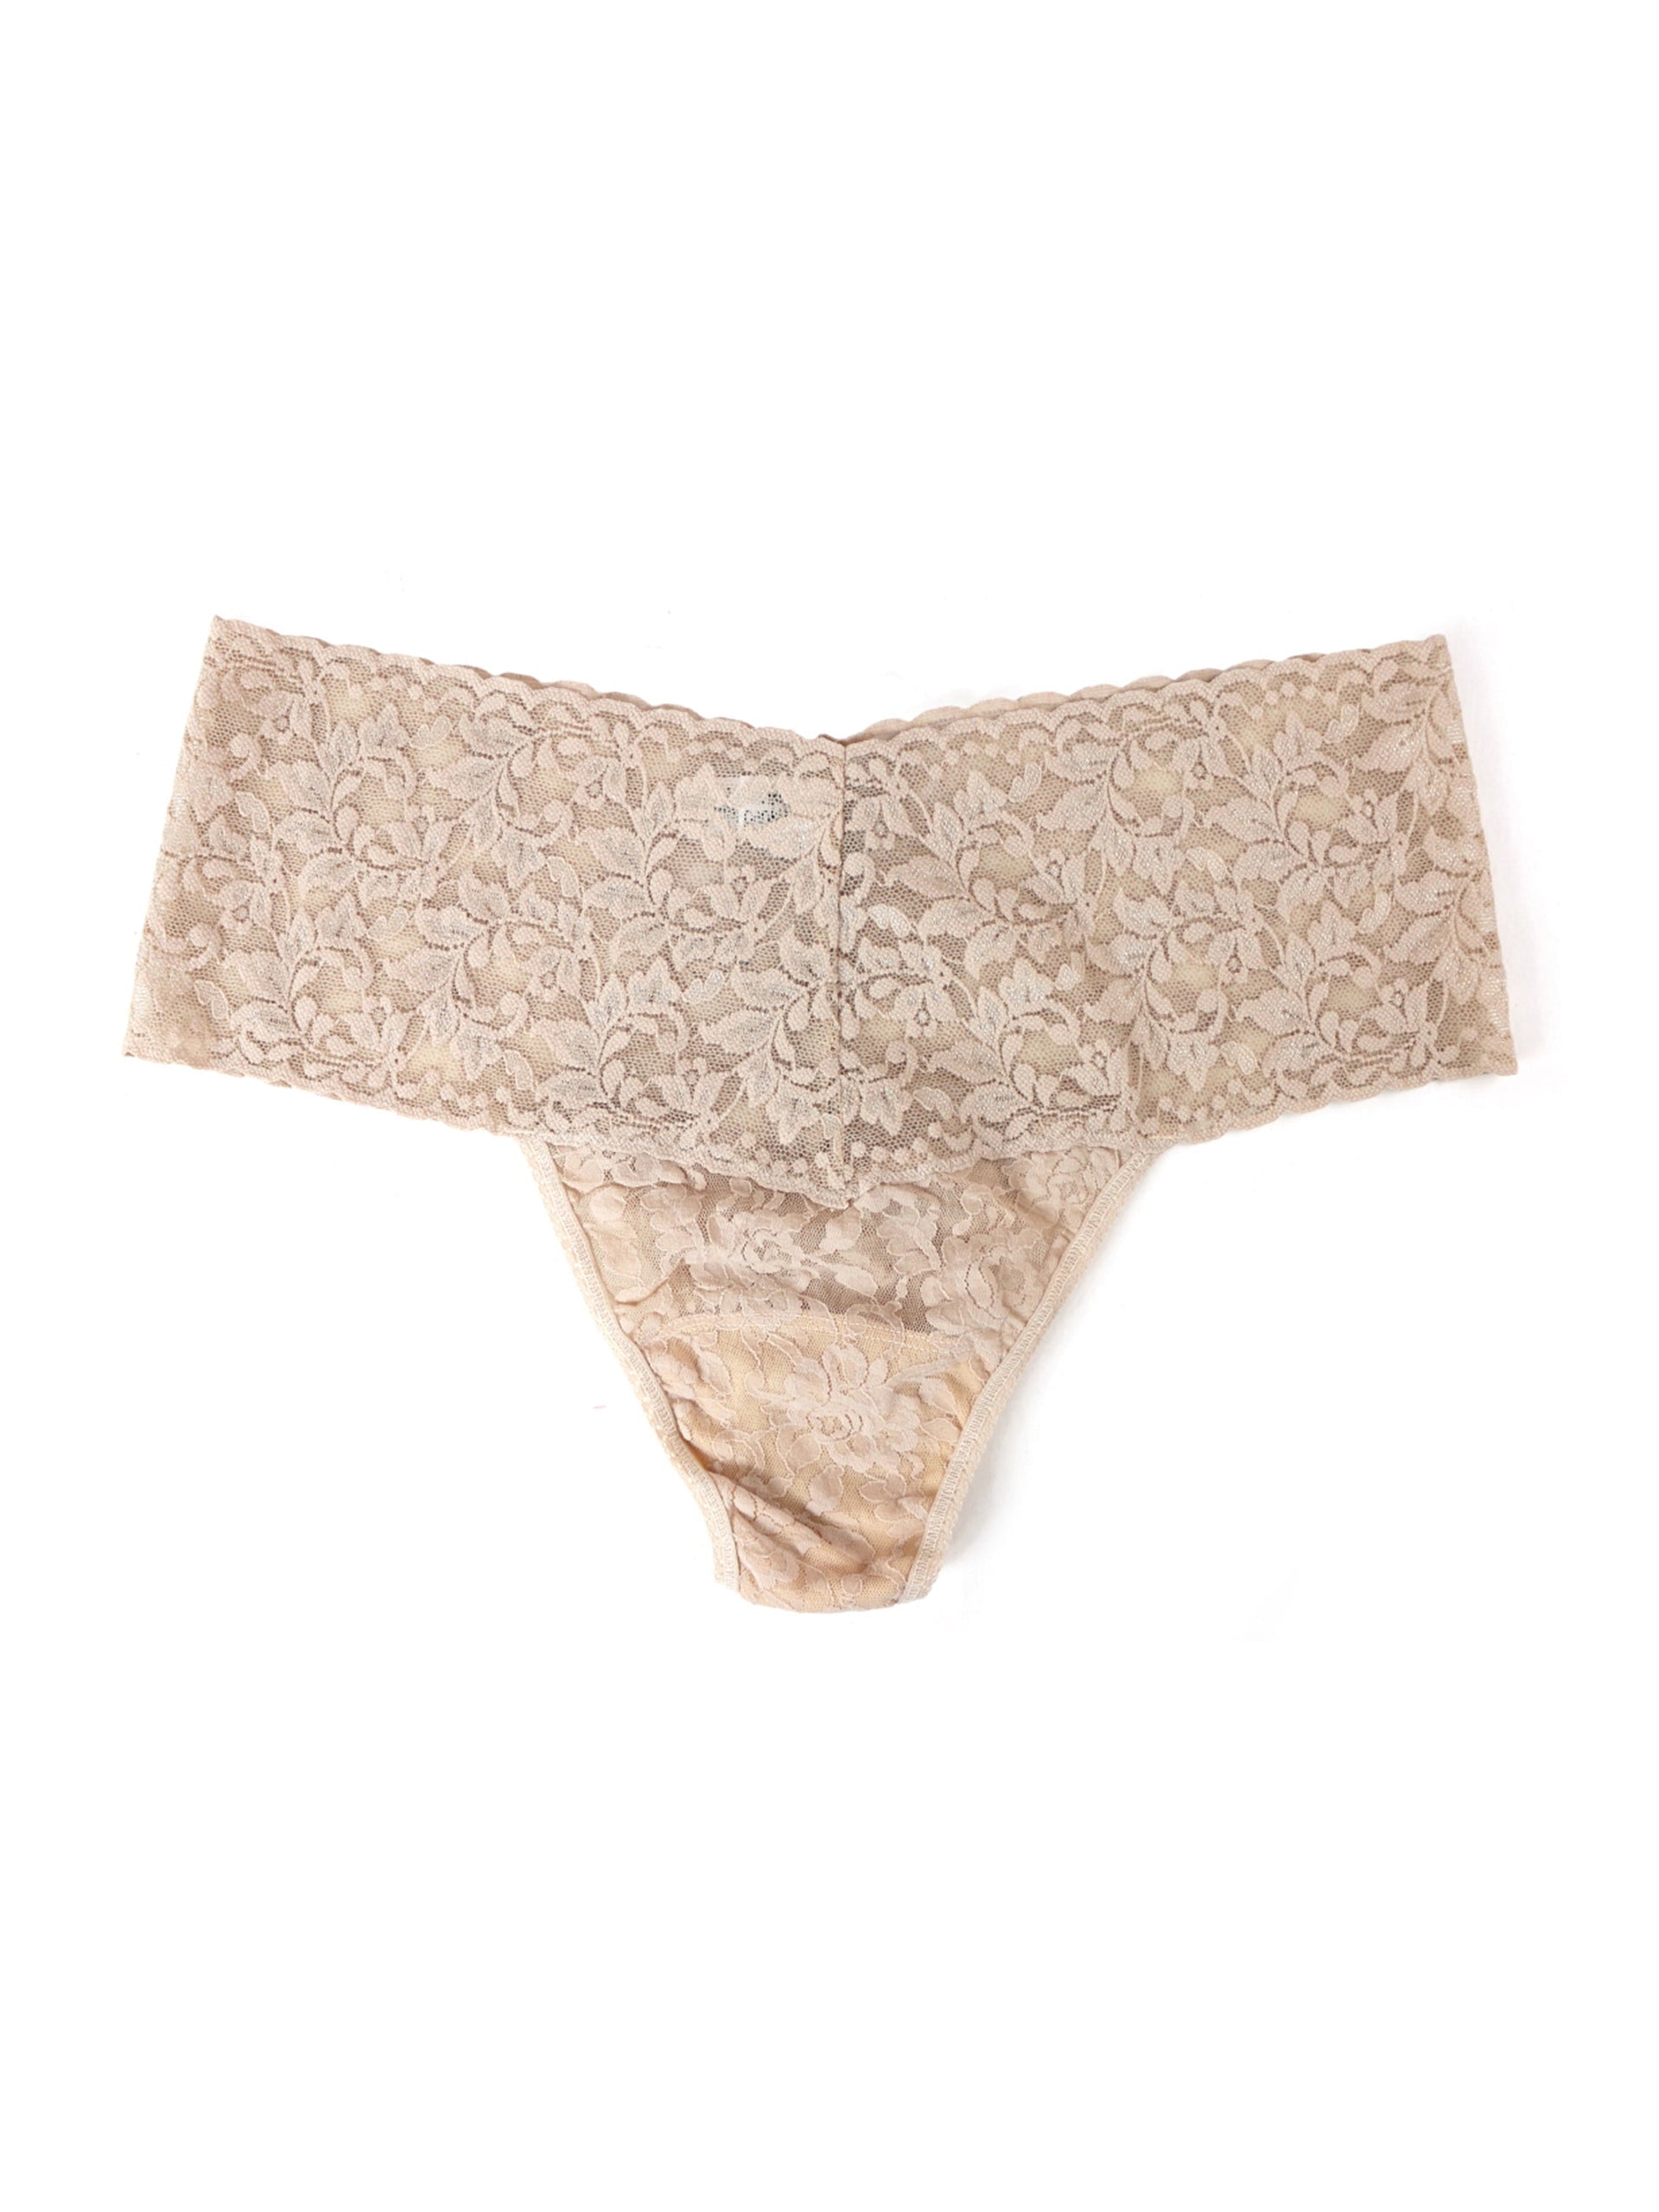 Plus Size Thongs - Lace & Cotton | Hanky Panky